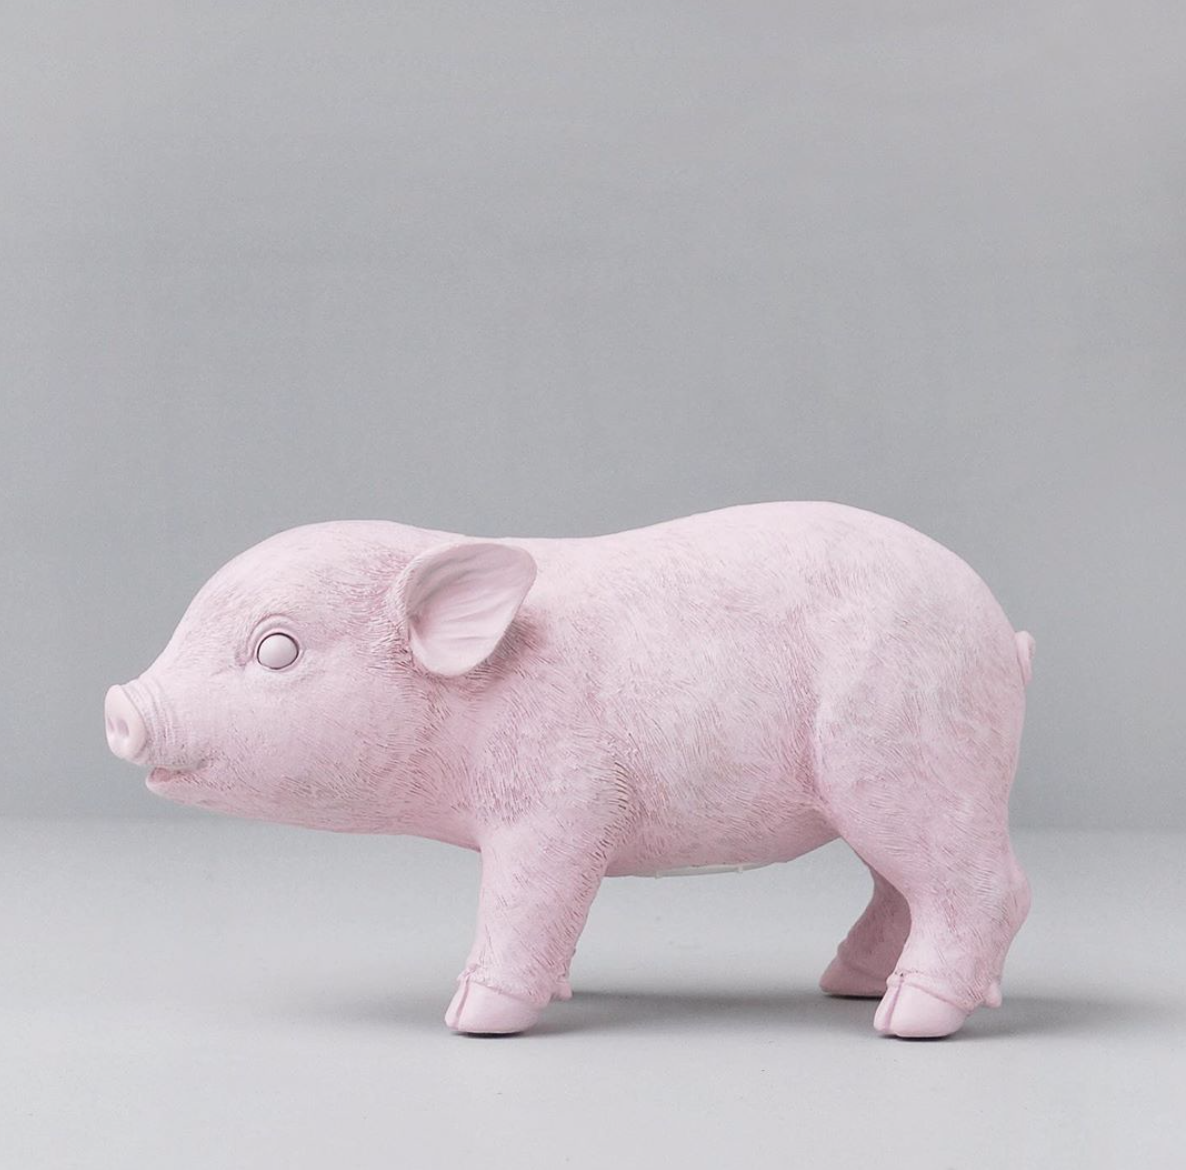 Piglet money bank / piggy money box statue